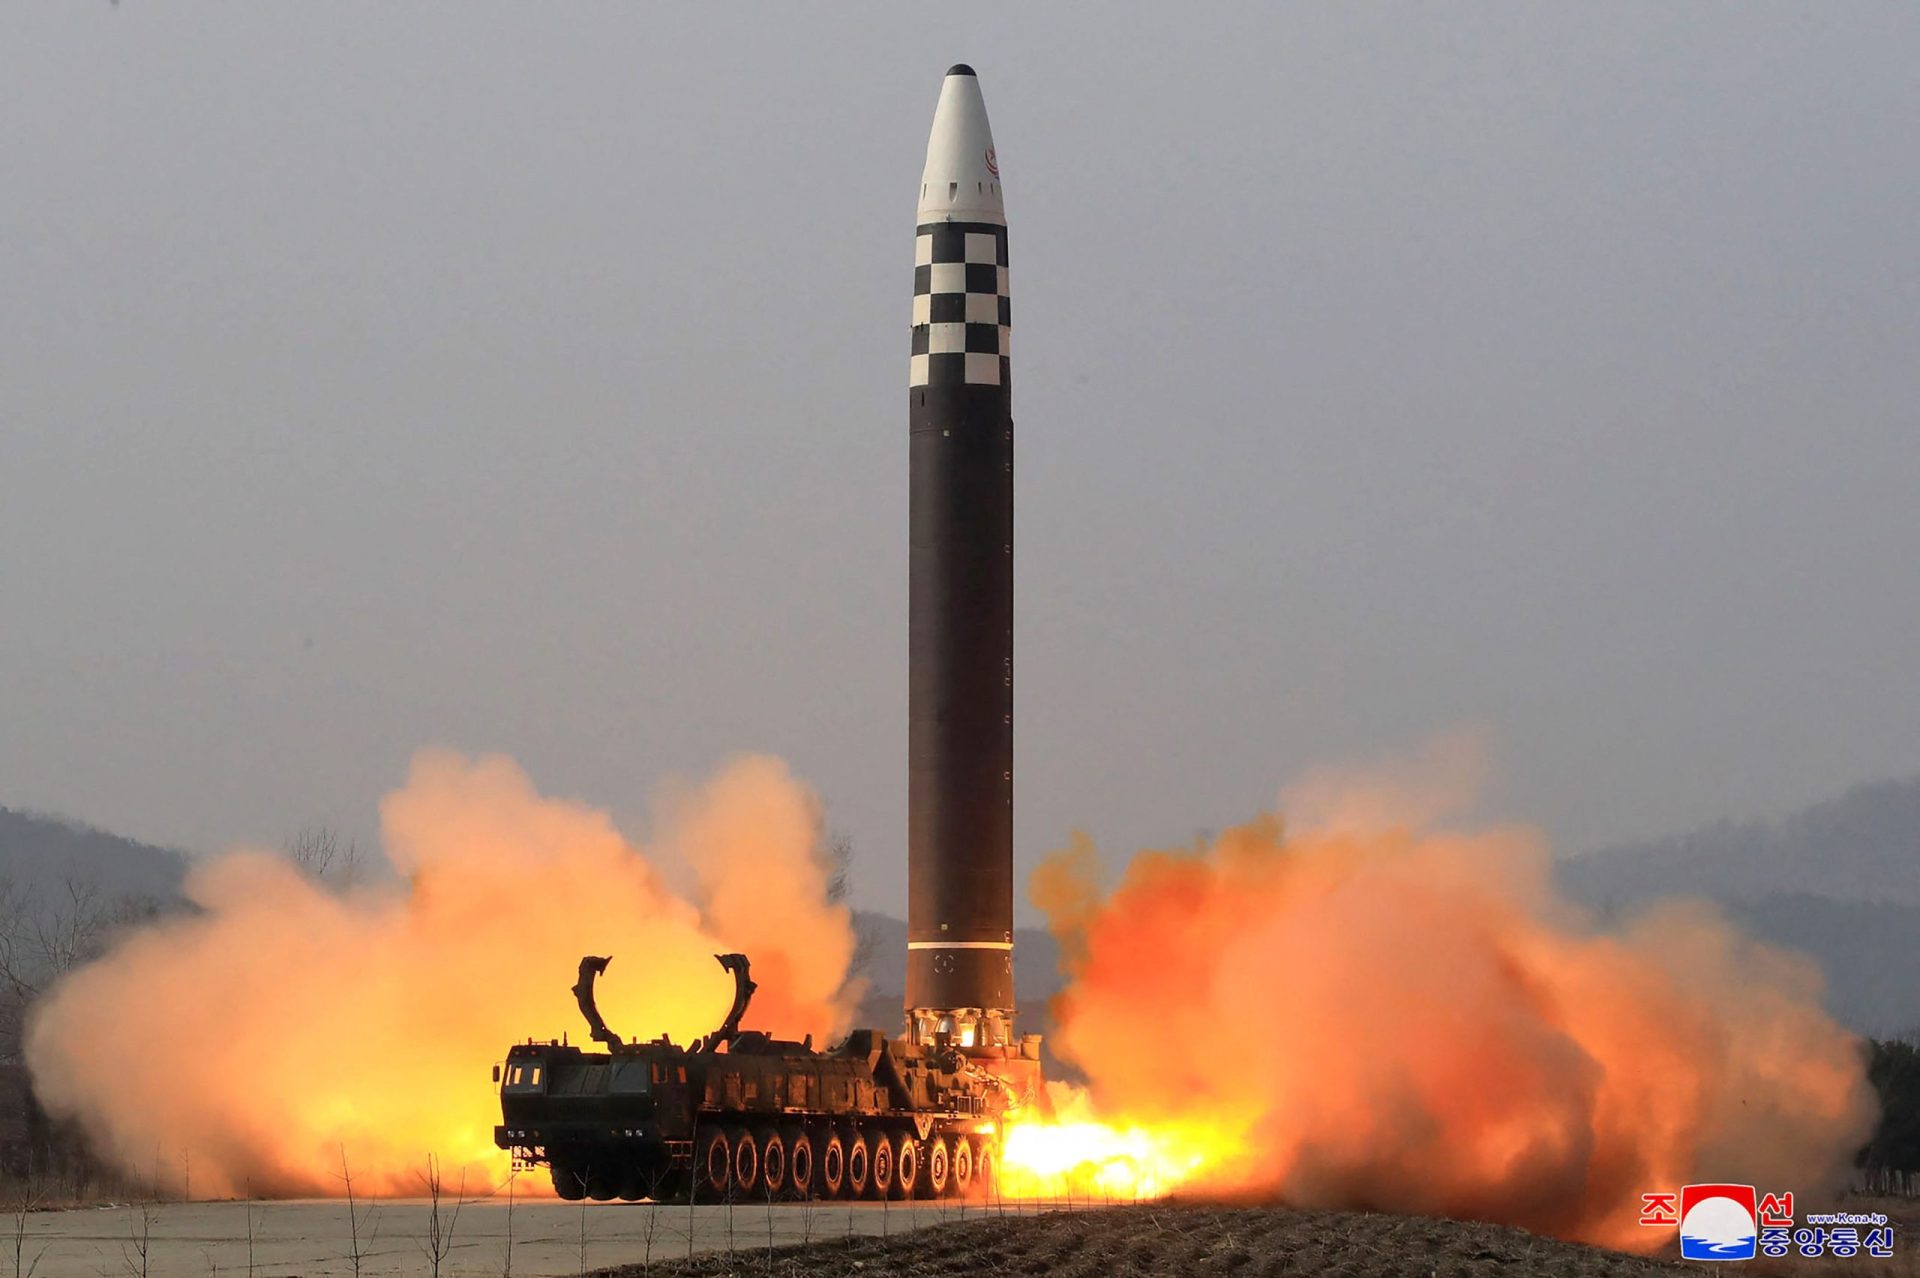 Lançamento de mísseis balísticos na Coreia do Norte é aviso para resto do mundo